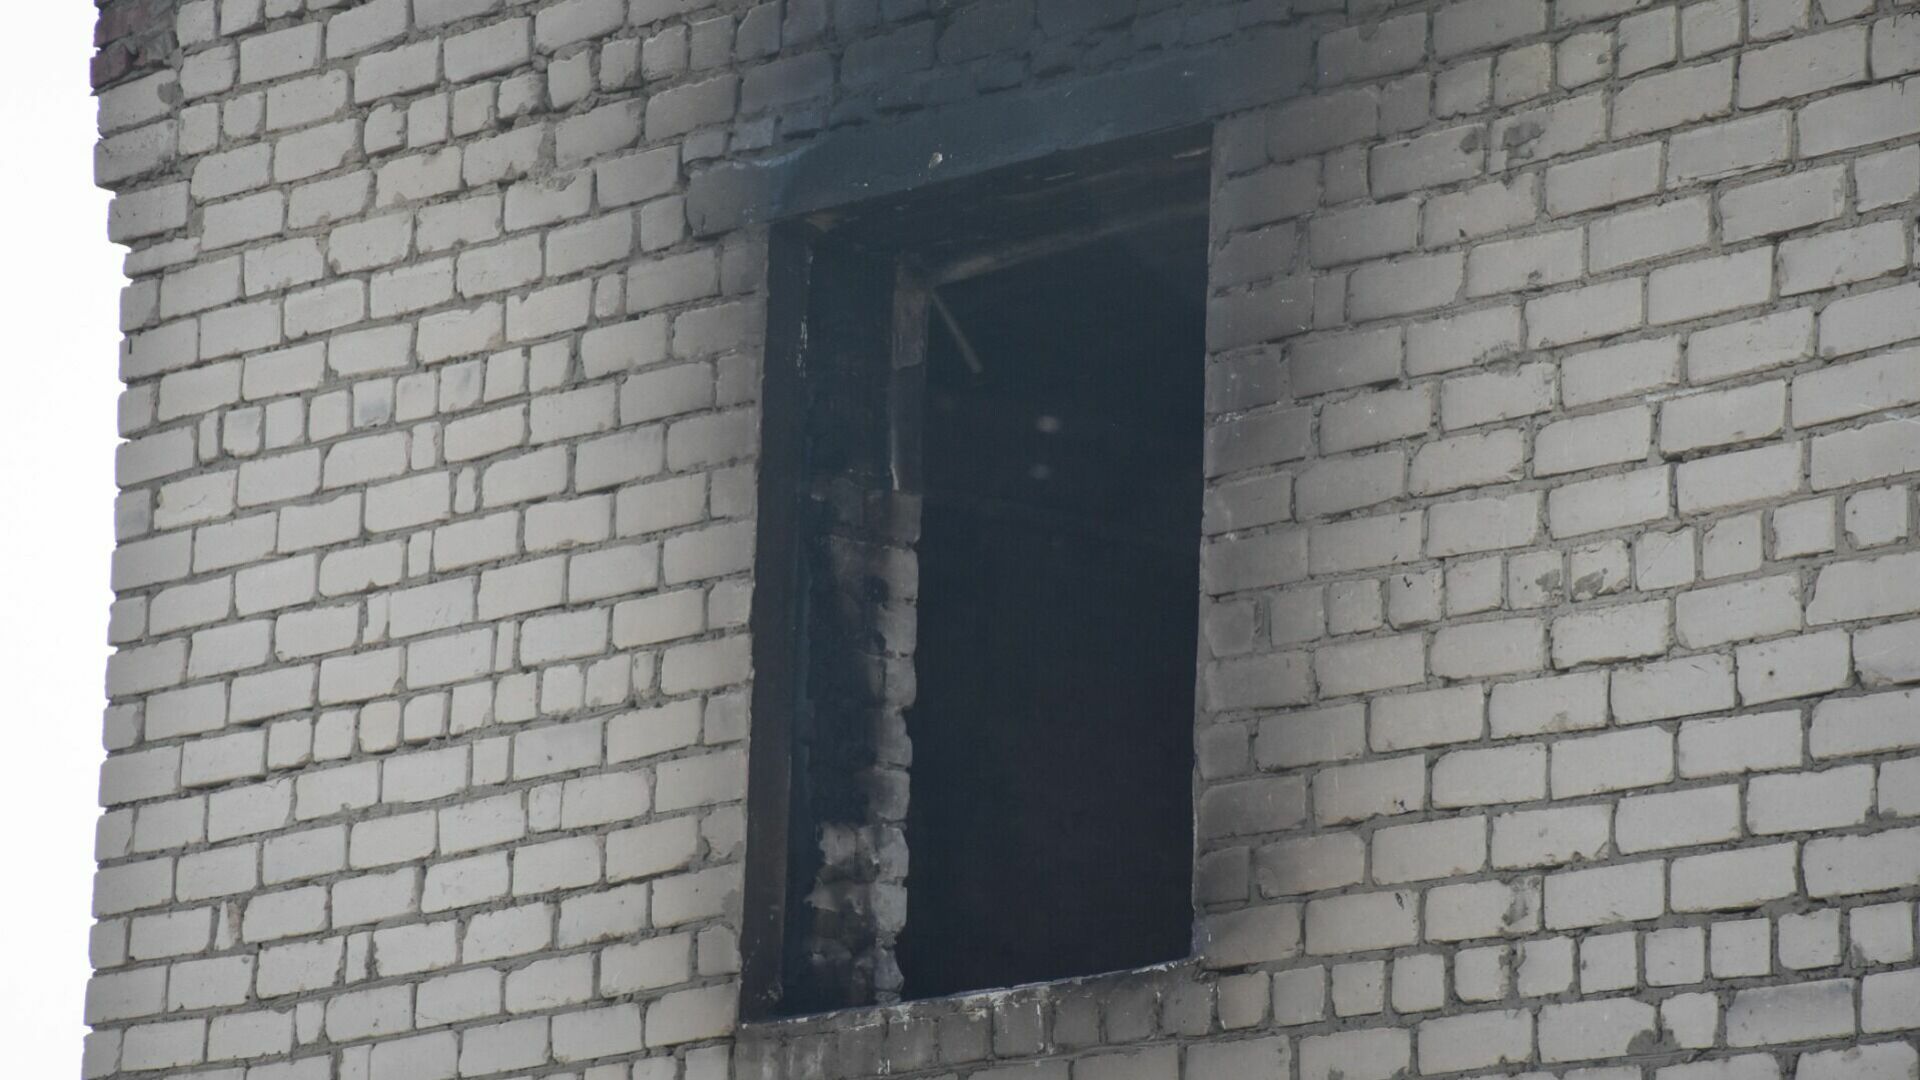 Ребенок выпрыгнул из окна горящей квартиры в Новосибирске